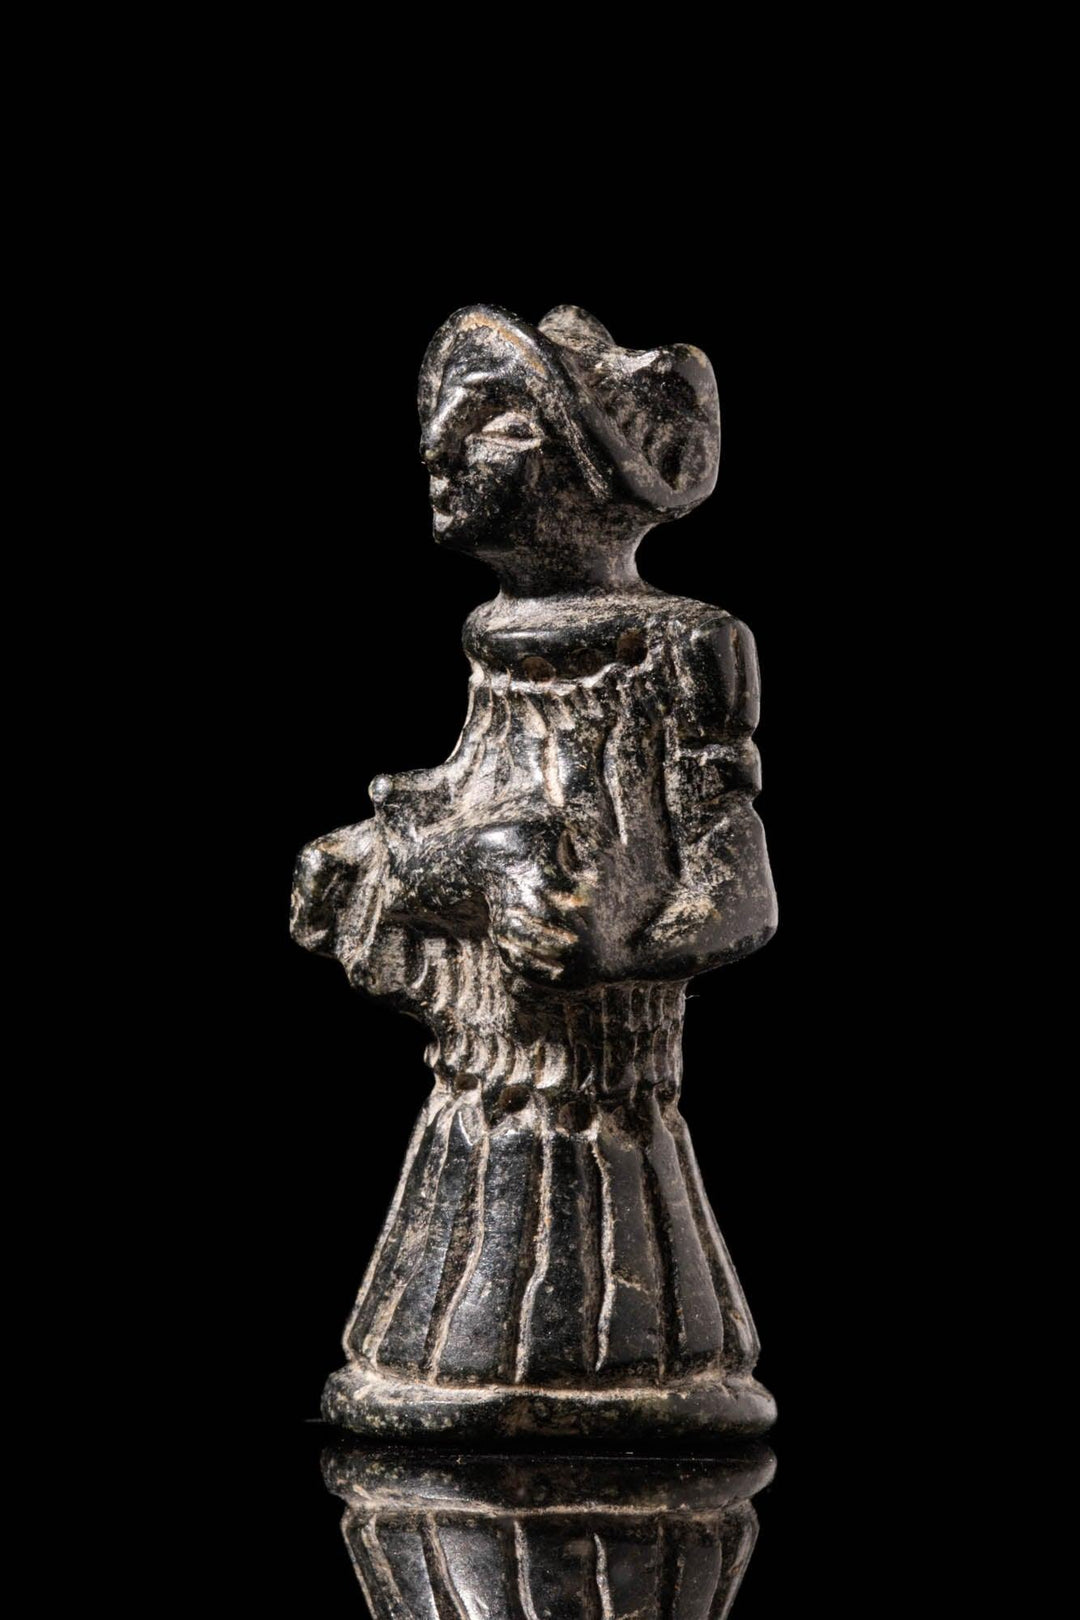 Syro-Hittite Black Stone Goddess Statuette - 18th to 17th Century BCE | Proven Divine Symbolism